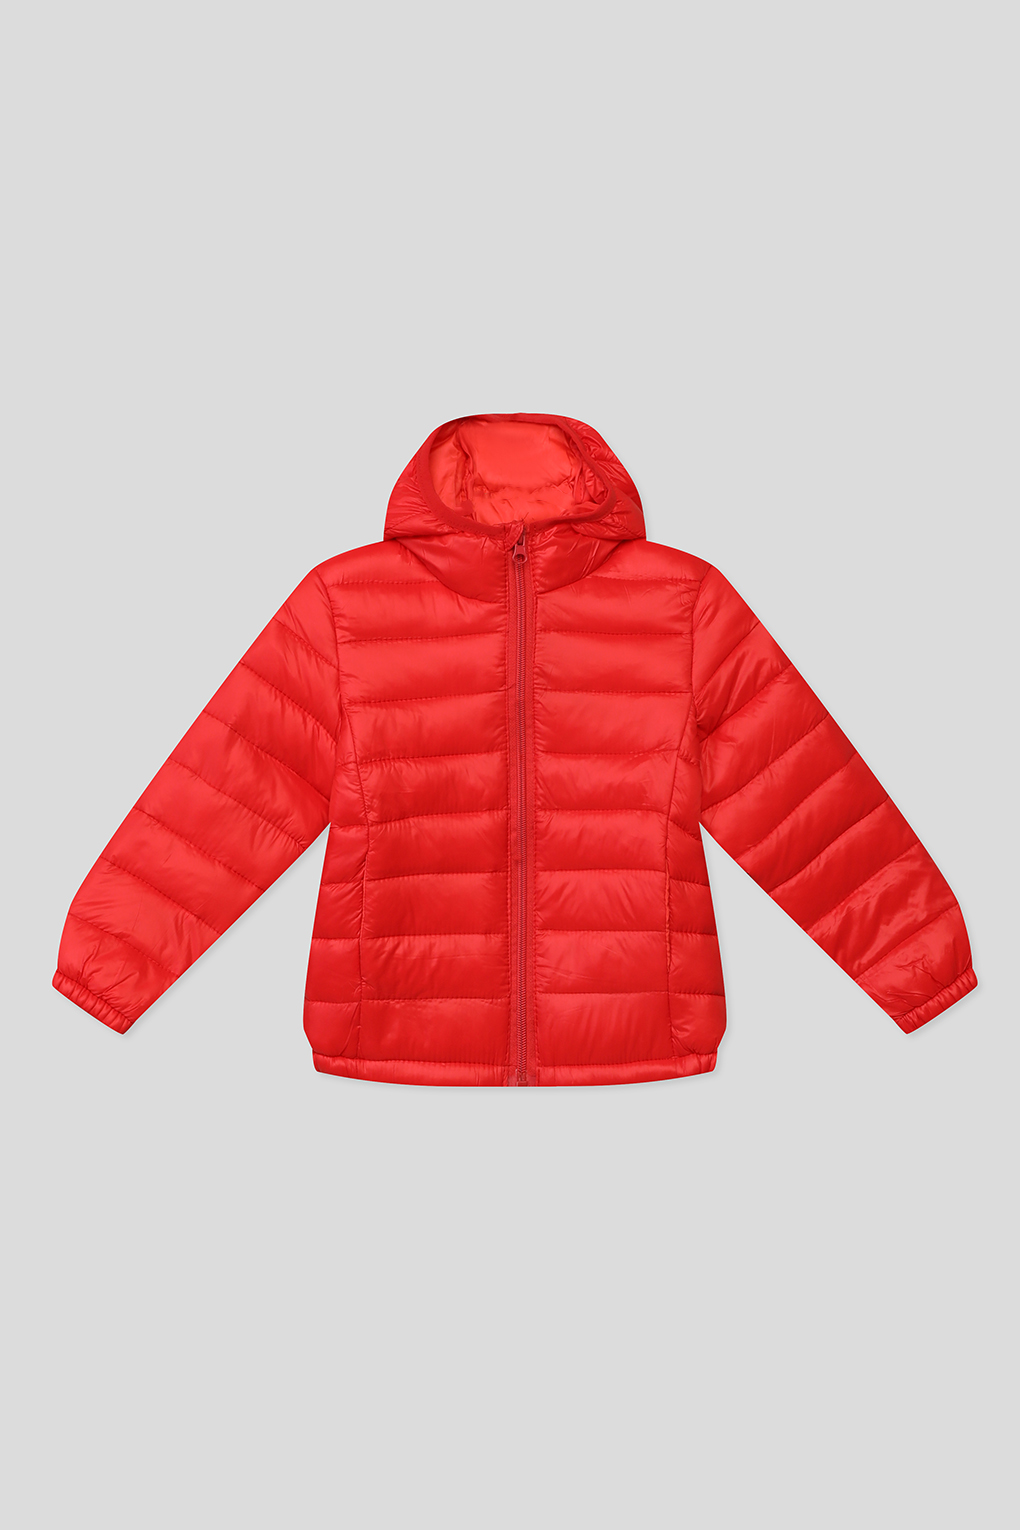 Куртка детская GIOCO G23049253-003 карсный красный, 110